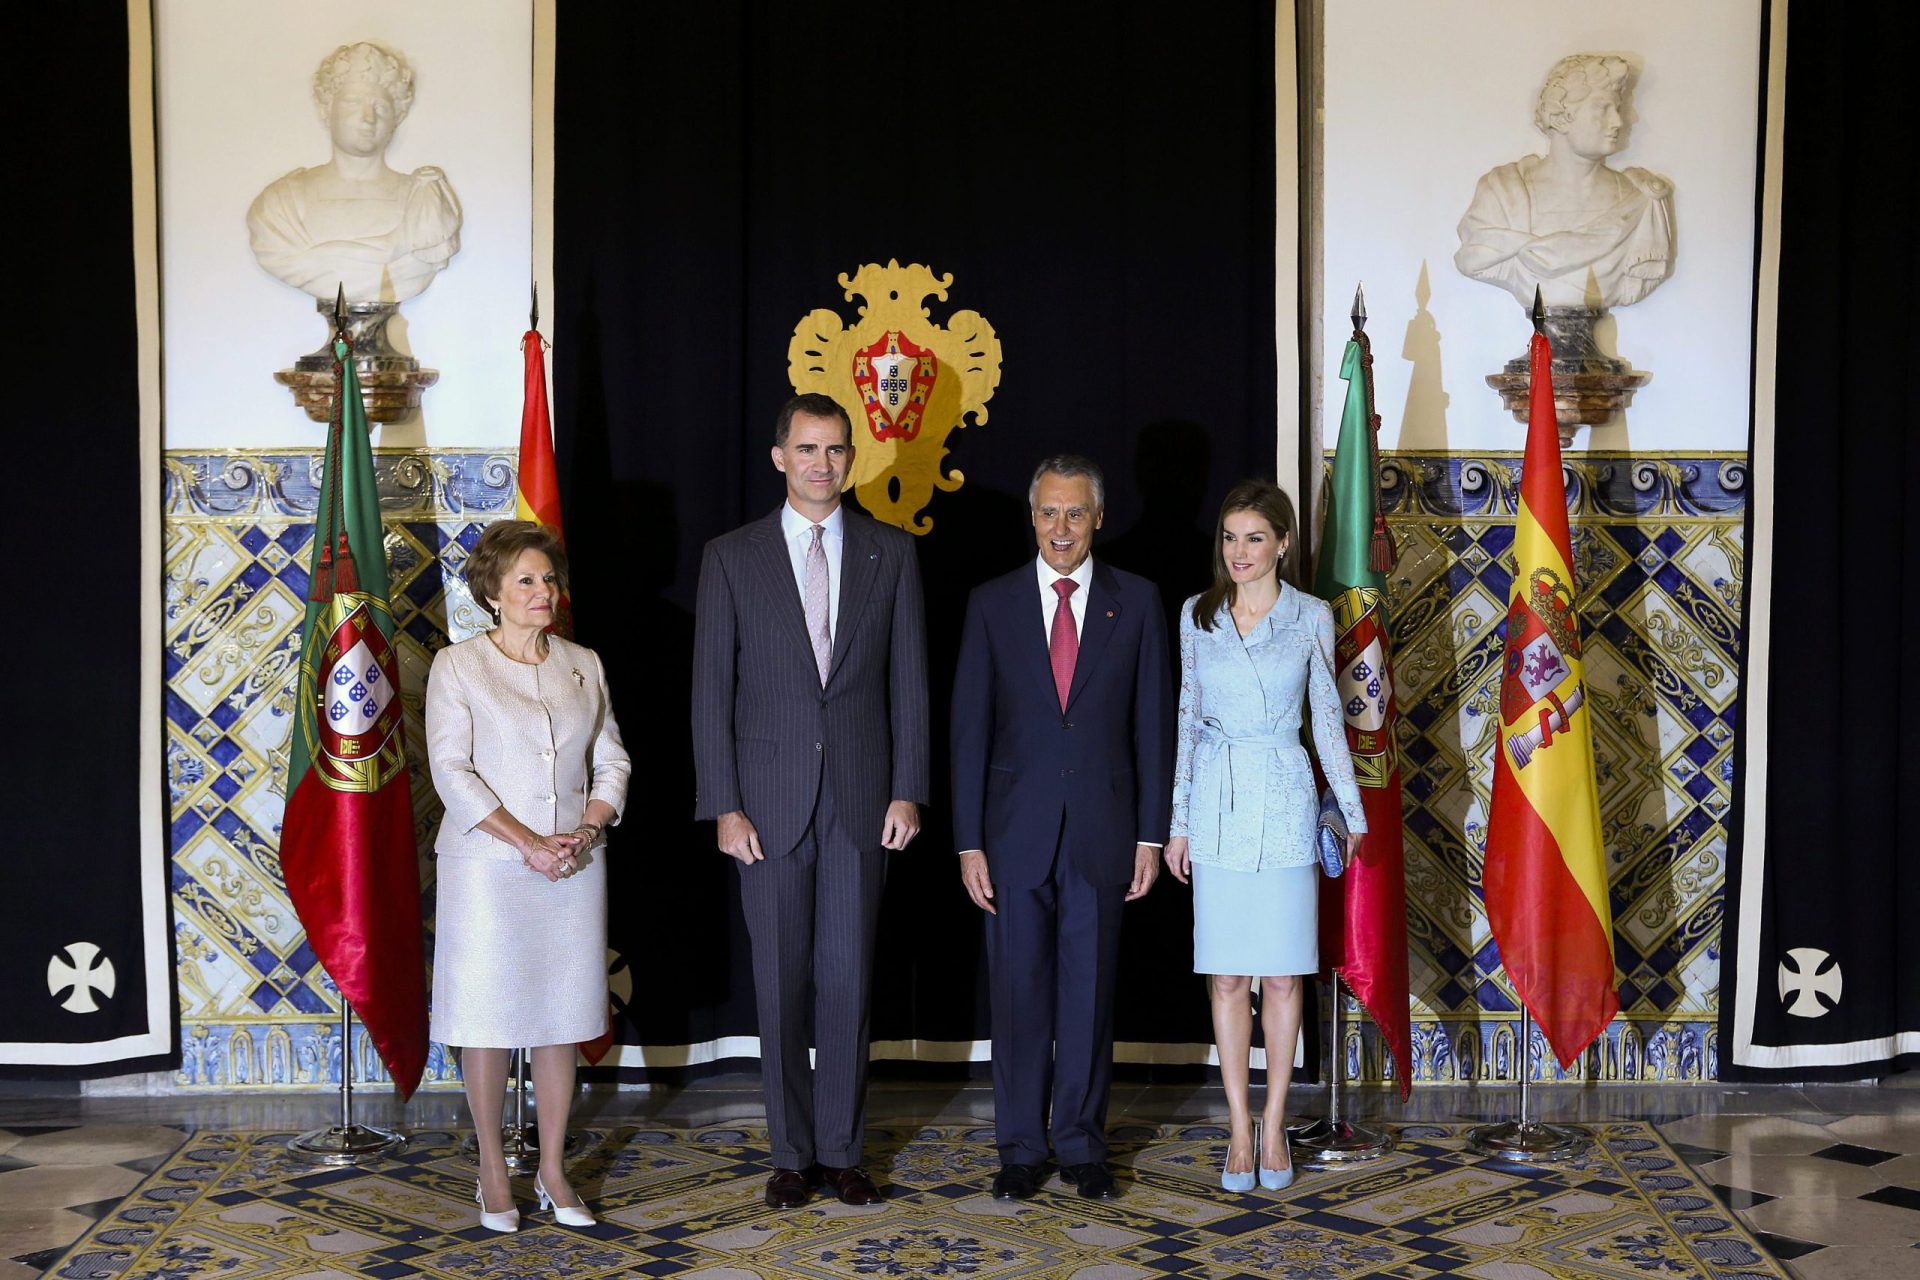 Reis de Espanha de visita a Lisboa a convite de Cavaco Silva